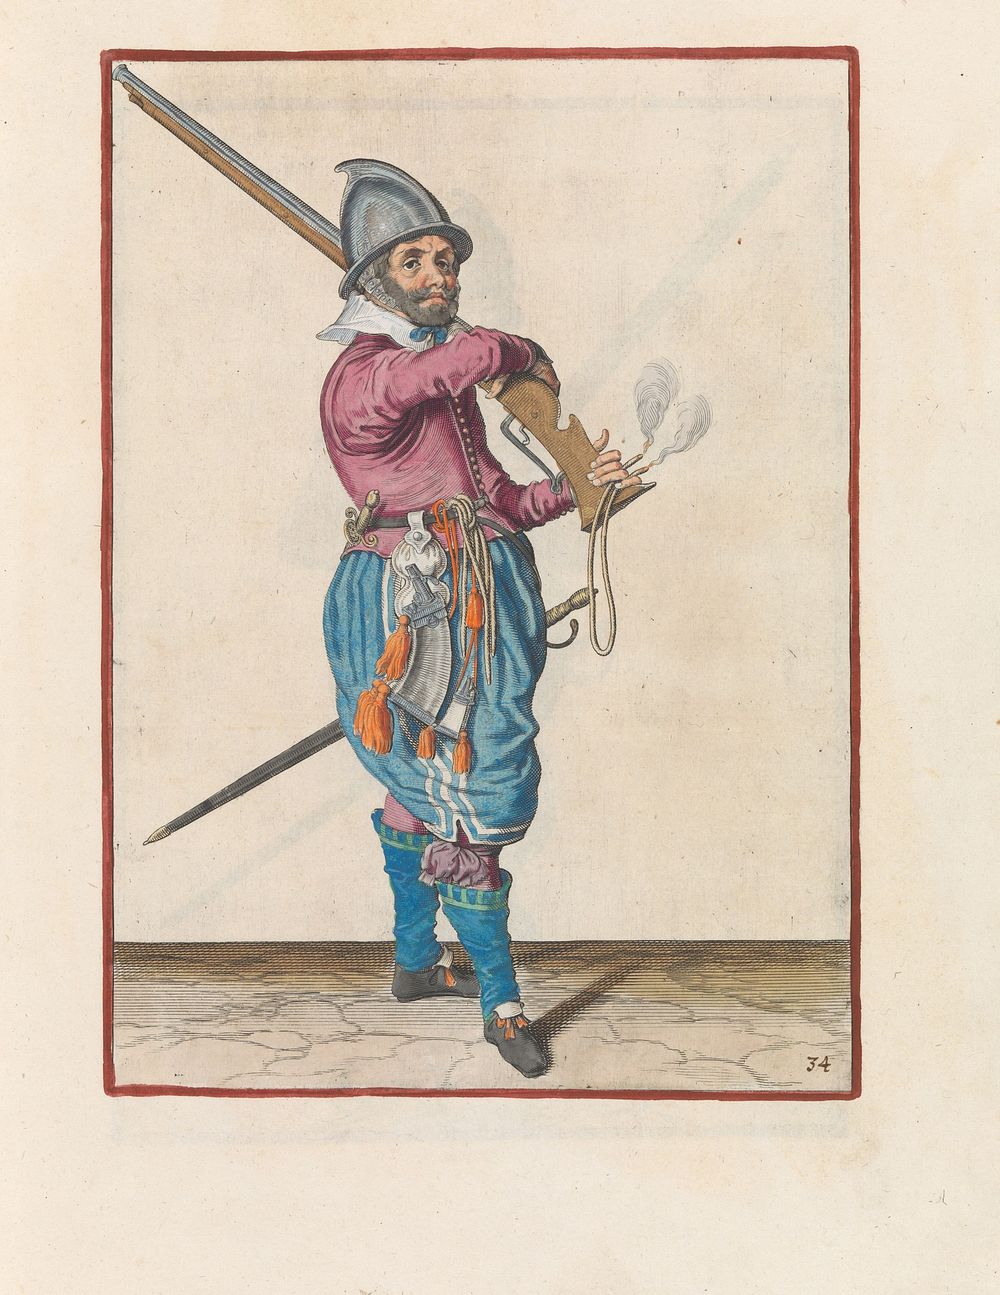 Soldaat op wacht die zijn roer van zijn schouder neemt (c. 1597 - 1607) by Jacques de Gheyn II and Jacques de Gheyn II